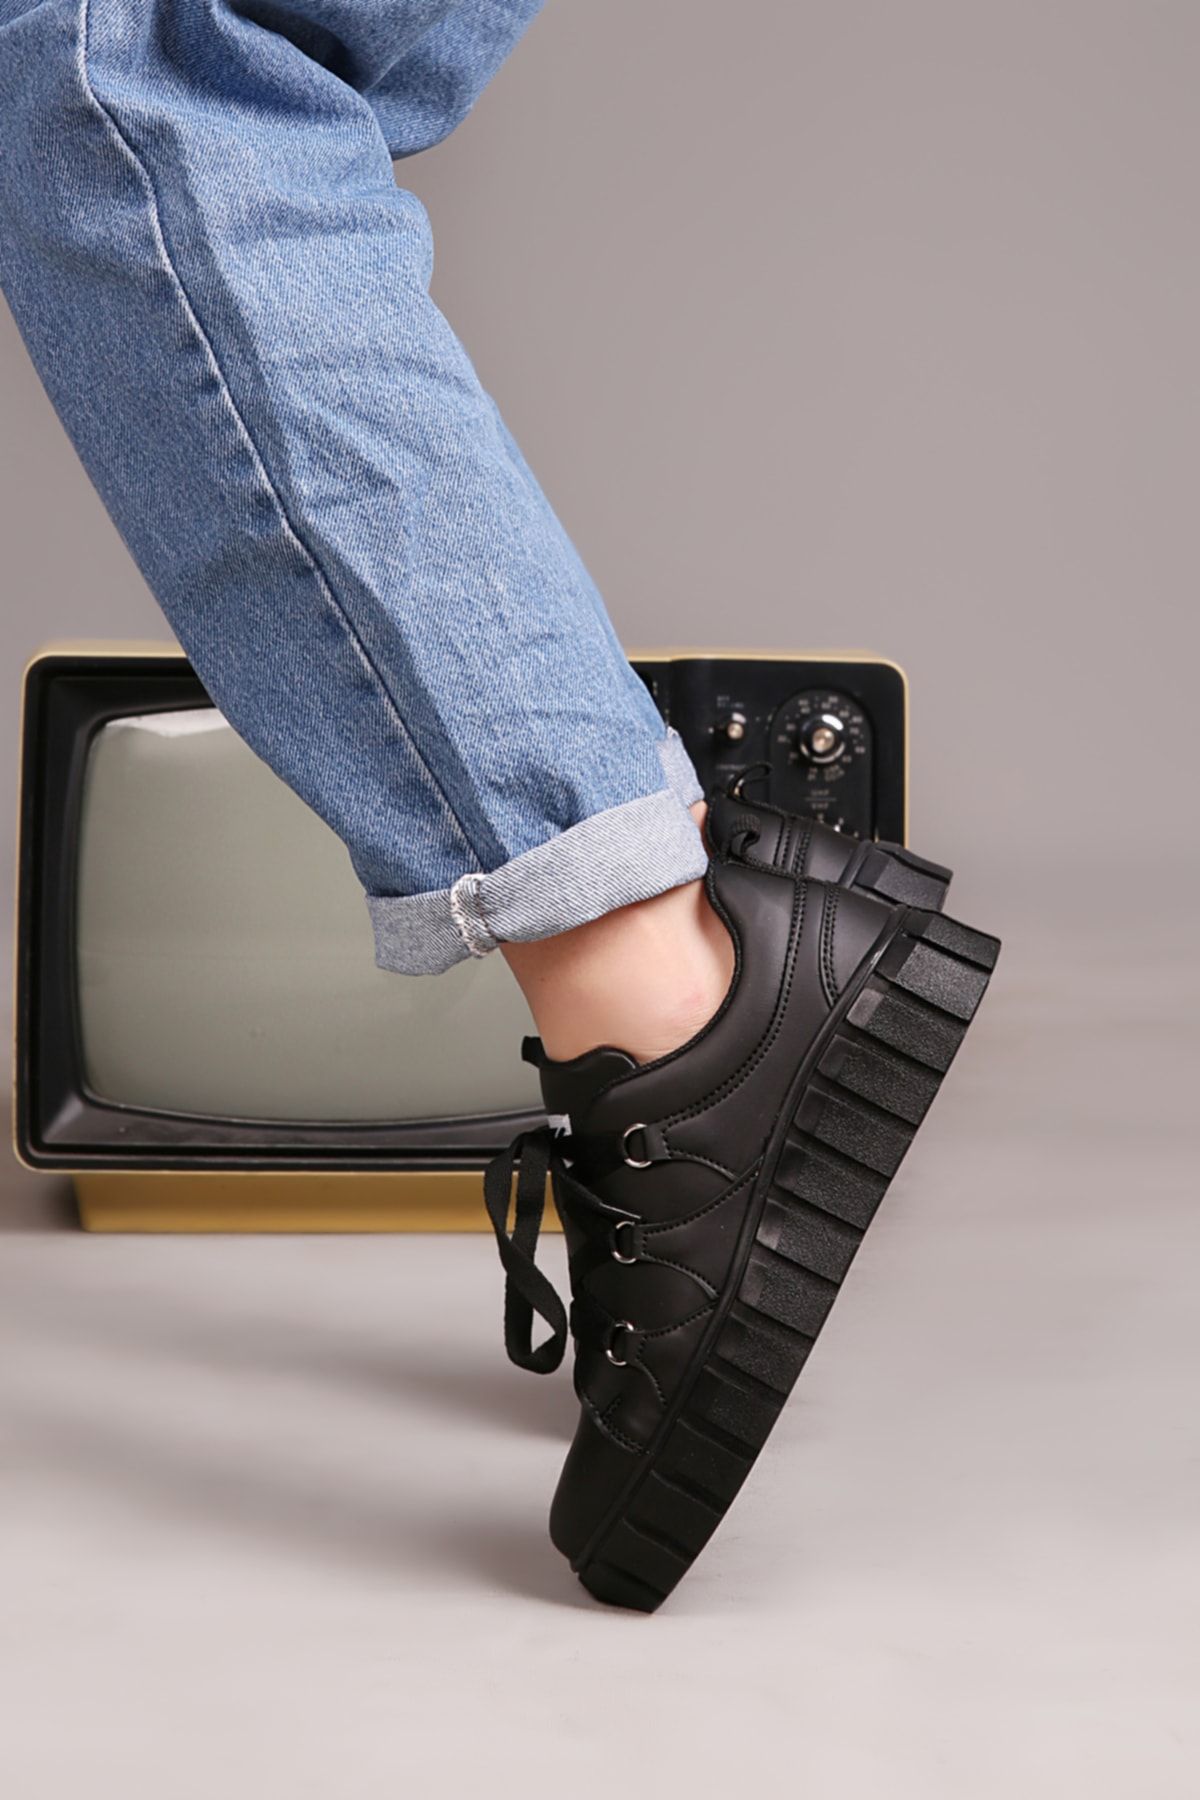 Özay ayakkabı Kadın Siyah Dolgu Taban Ortapedik Sneaker Ayakkabı